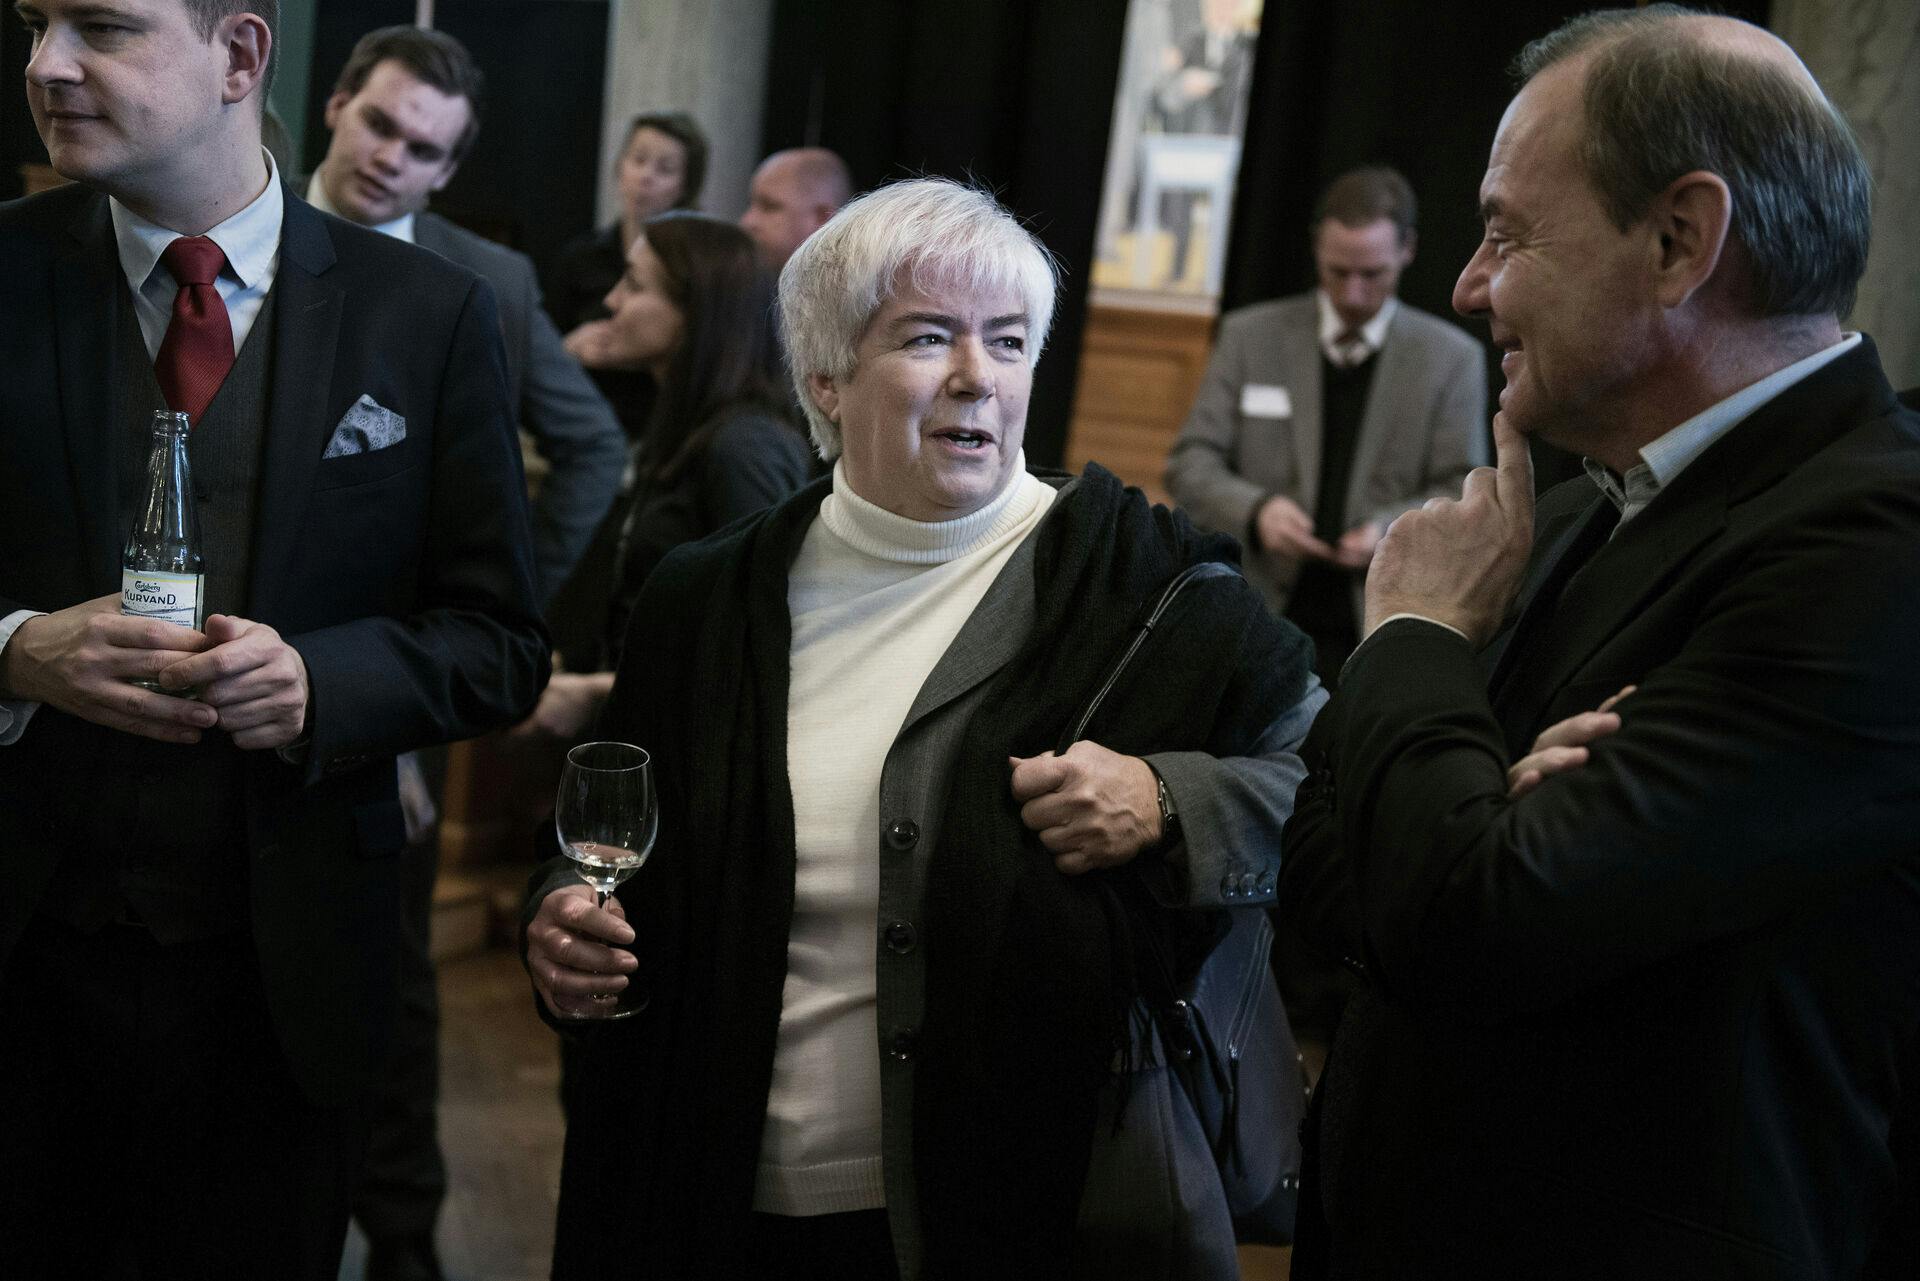 Anne Birgitte Lundholt er en dreven bestyrelsesformand med en fortid som blandt andet konservativ industriminister. Men striden med de danske flyveledere, der har lammet flere lufthavne, blev hendes endeligt.